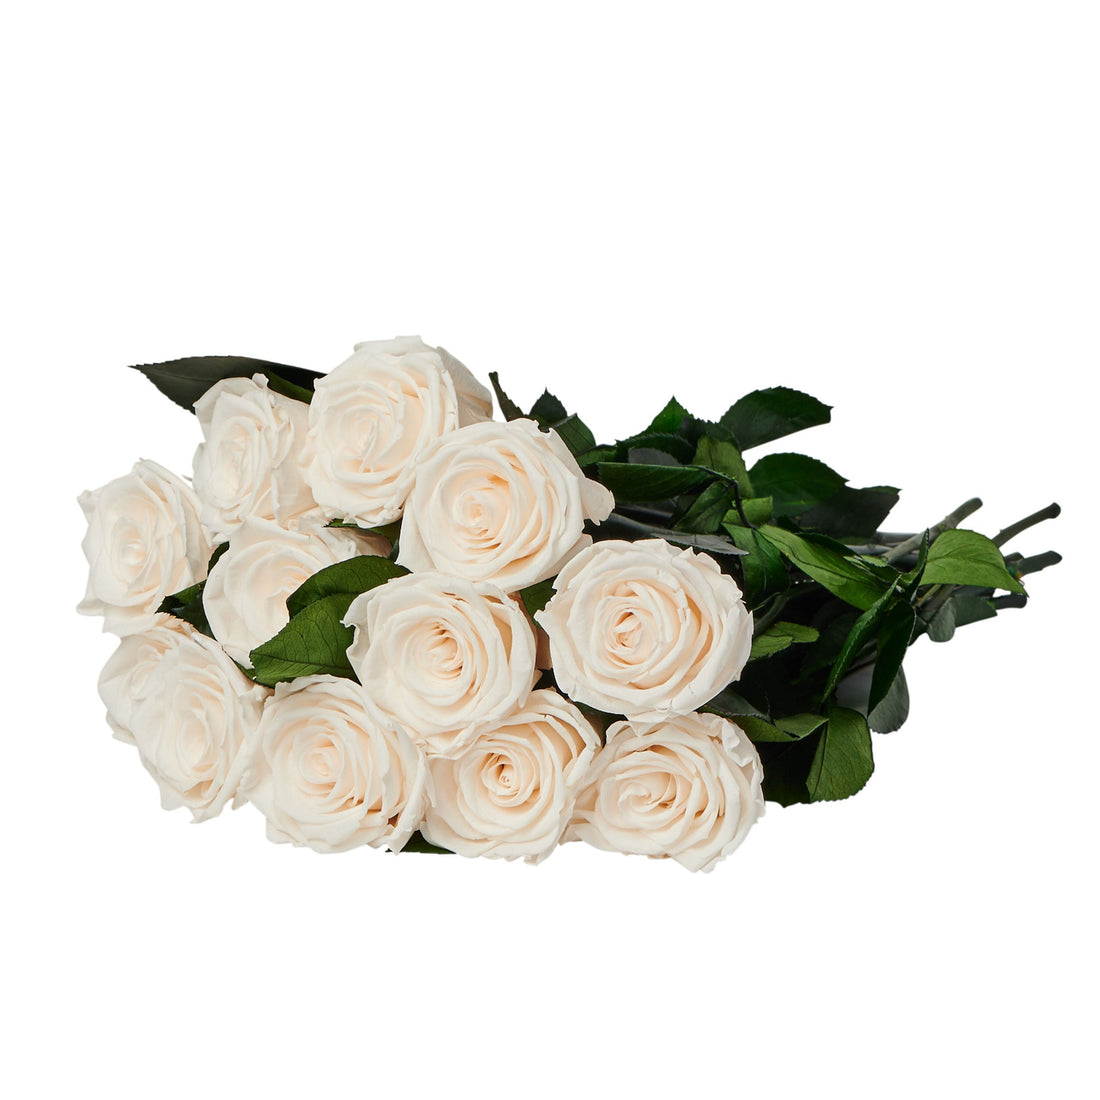 Dozen Long Stems Roses by La Fleur Lifetime Flowers